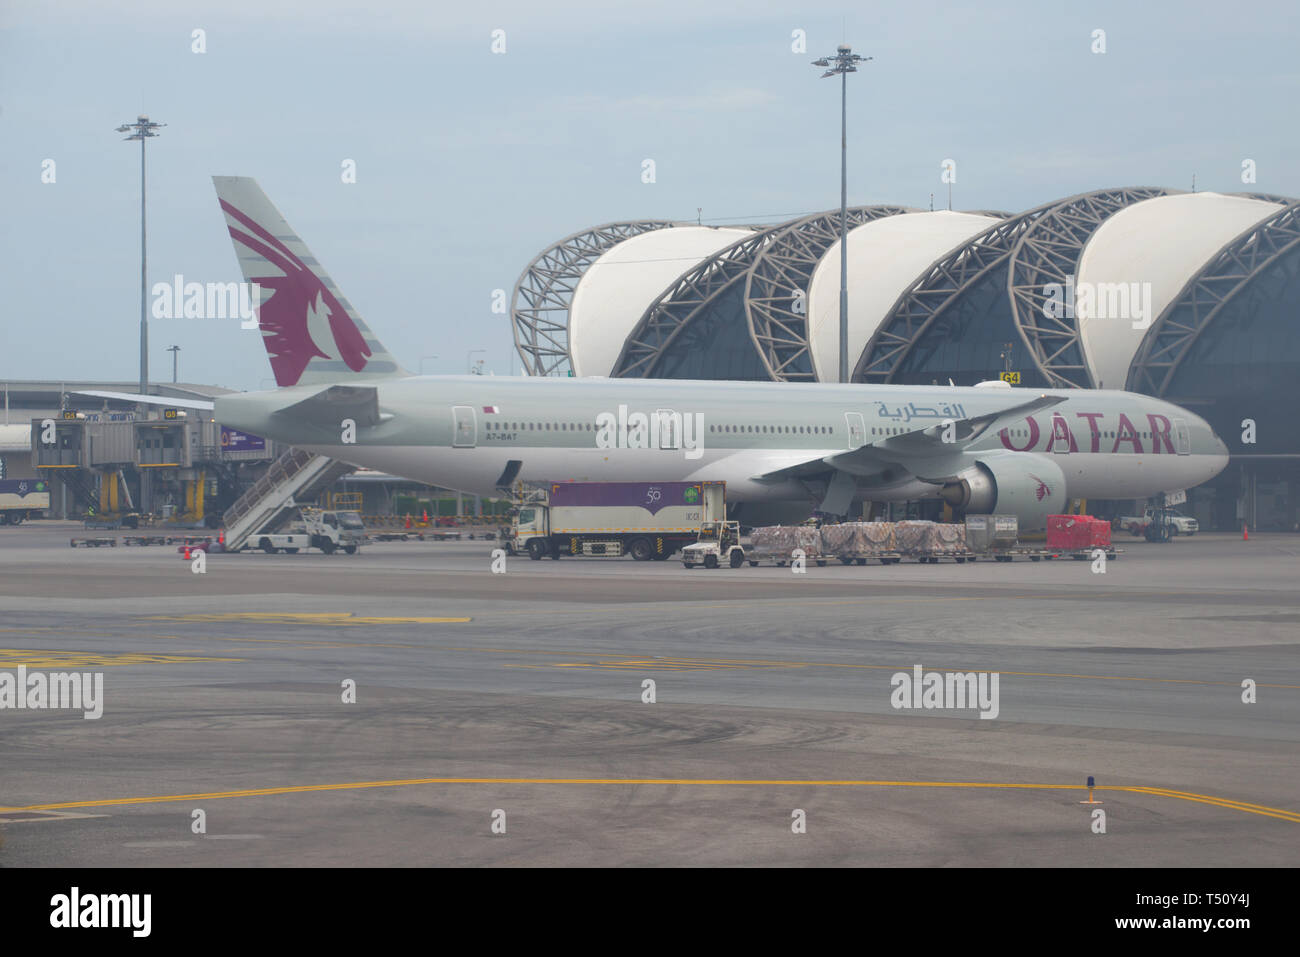 BANGKOK, THAÏLANDE - 09 décembre 2018 : Avion Boeing 777-3DZ (A7-BAT) de la compagnie aérienne Qatar Airways, 'à l'aéroport de Suvarnabhumi Banque D'Images